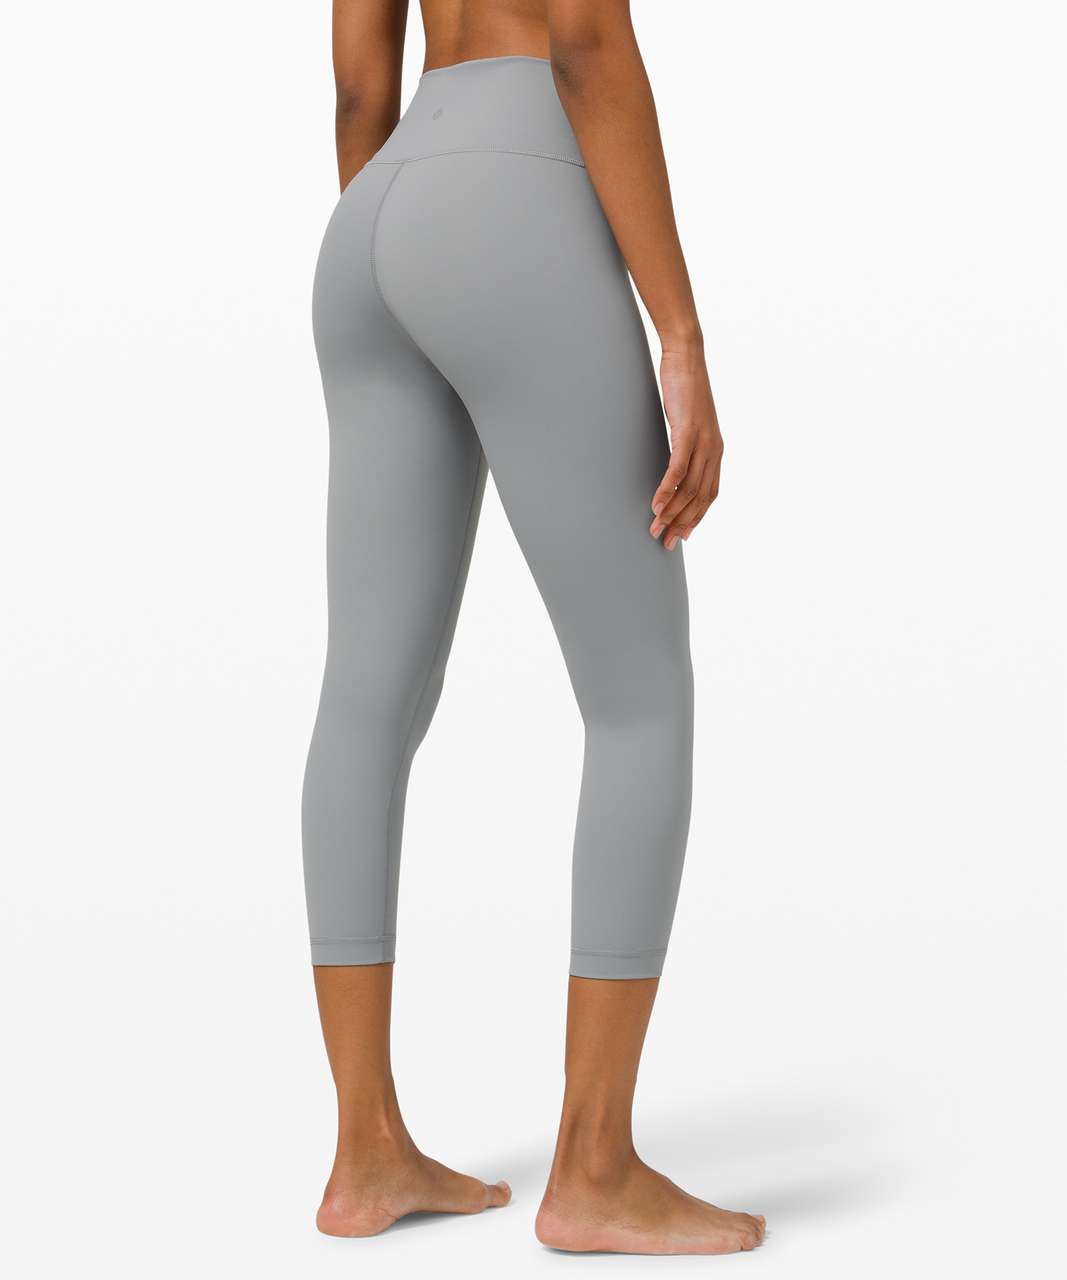 Lululemon mid rise full length heather textured gray leggings size 6 #93 